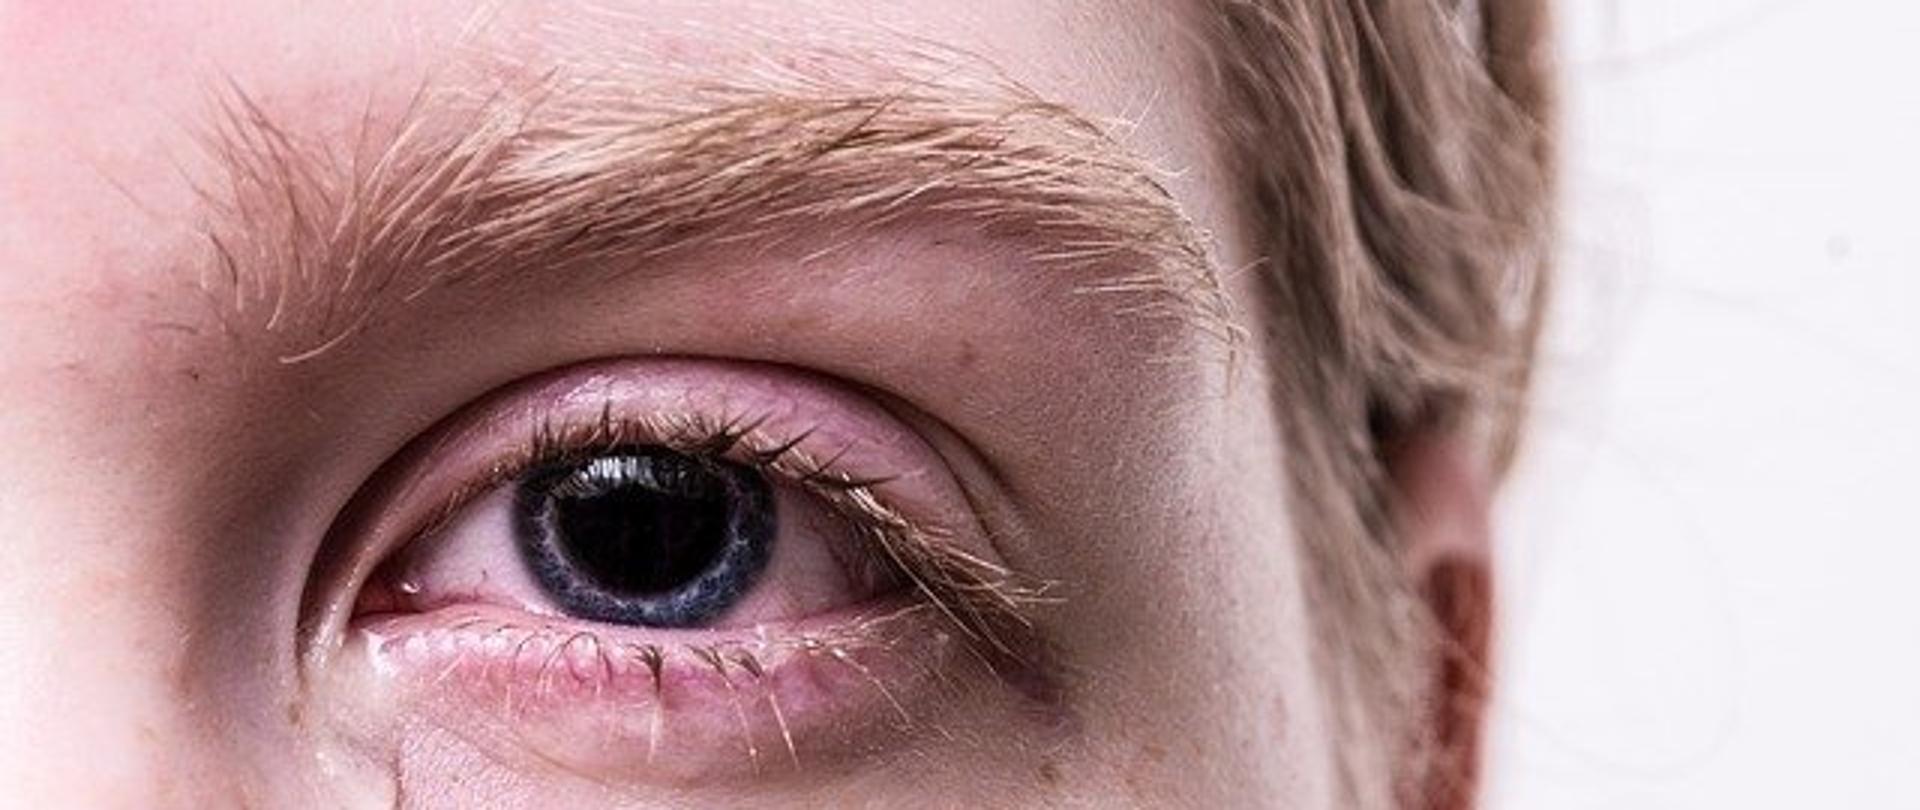 Zdjęcie fragmentu twarzy osoby dotkniętej przemocą: załzawione, podkrążone oko